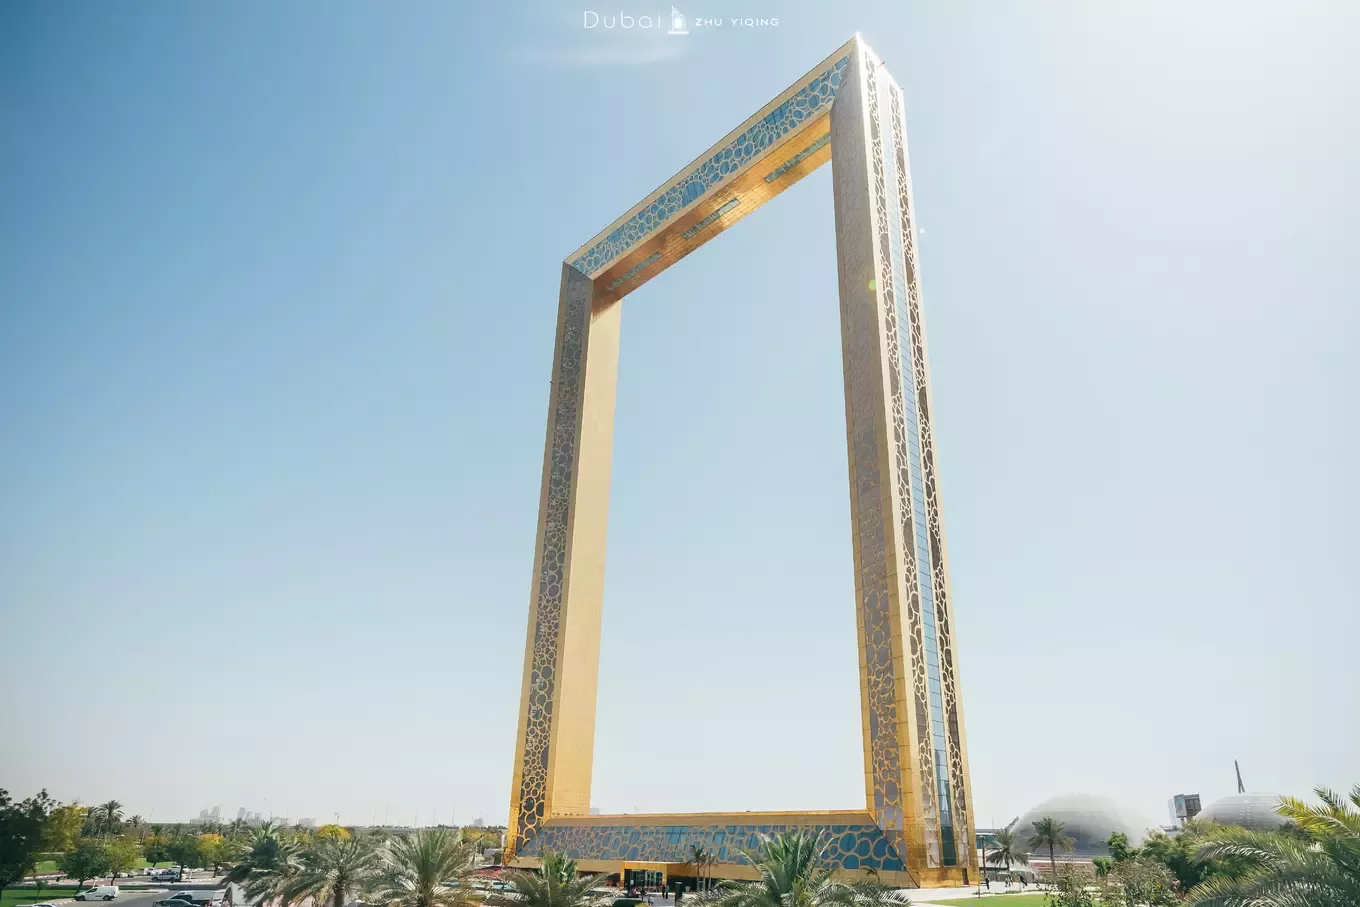 迪拜再现土豪之作,花3亿打造纯金外墙的迪拜之框,又是世界之最